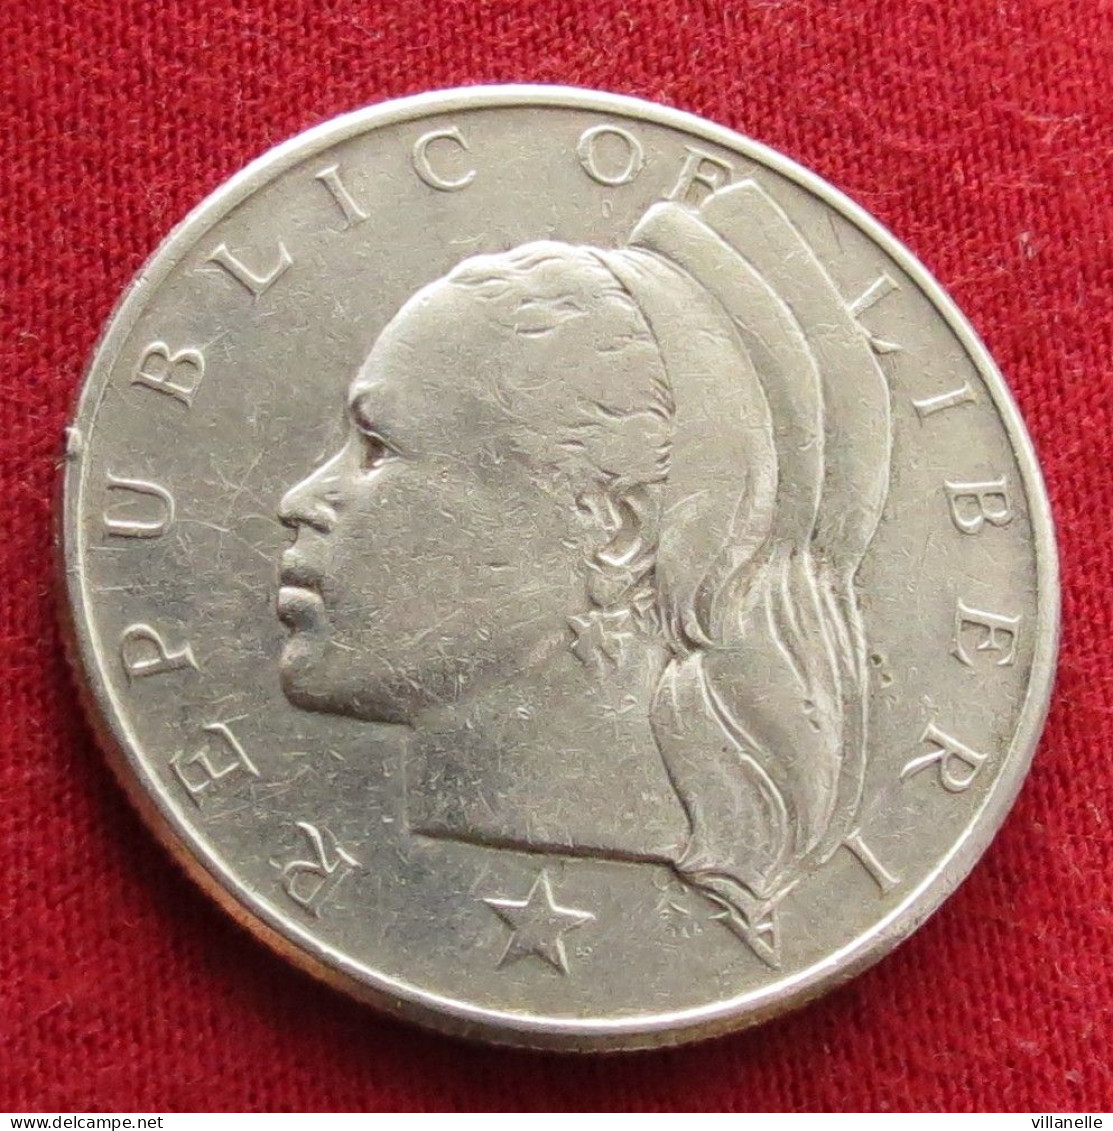 Liberia 50 Cents 1961 W ºº - Liberia